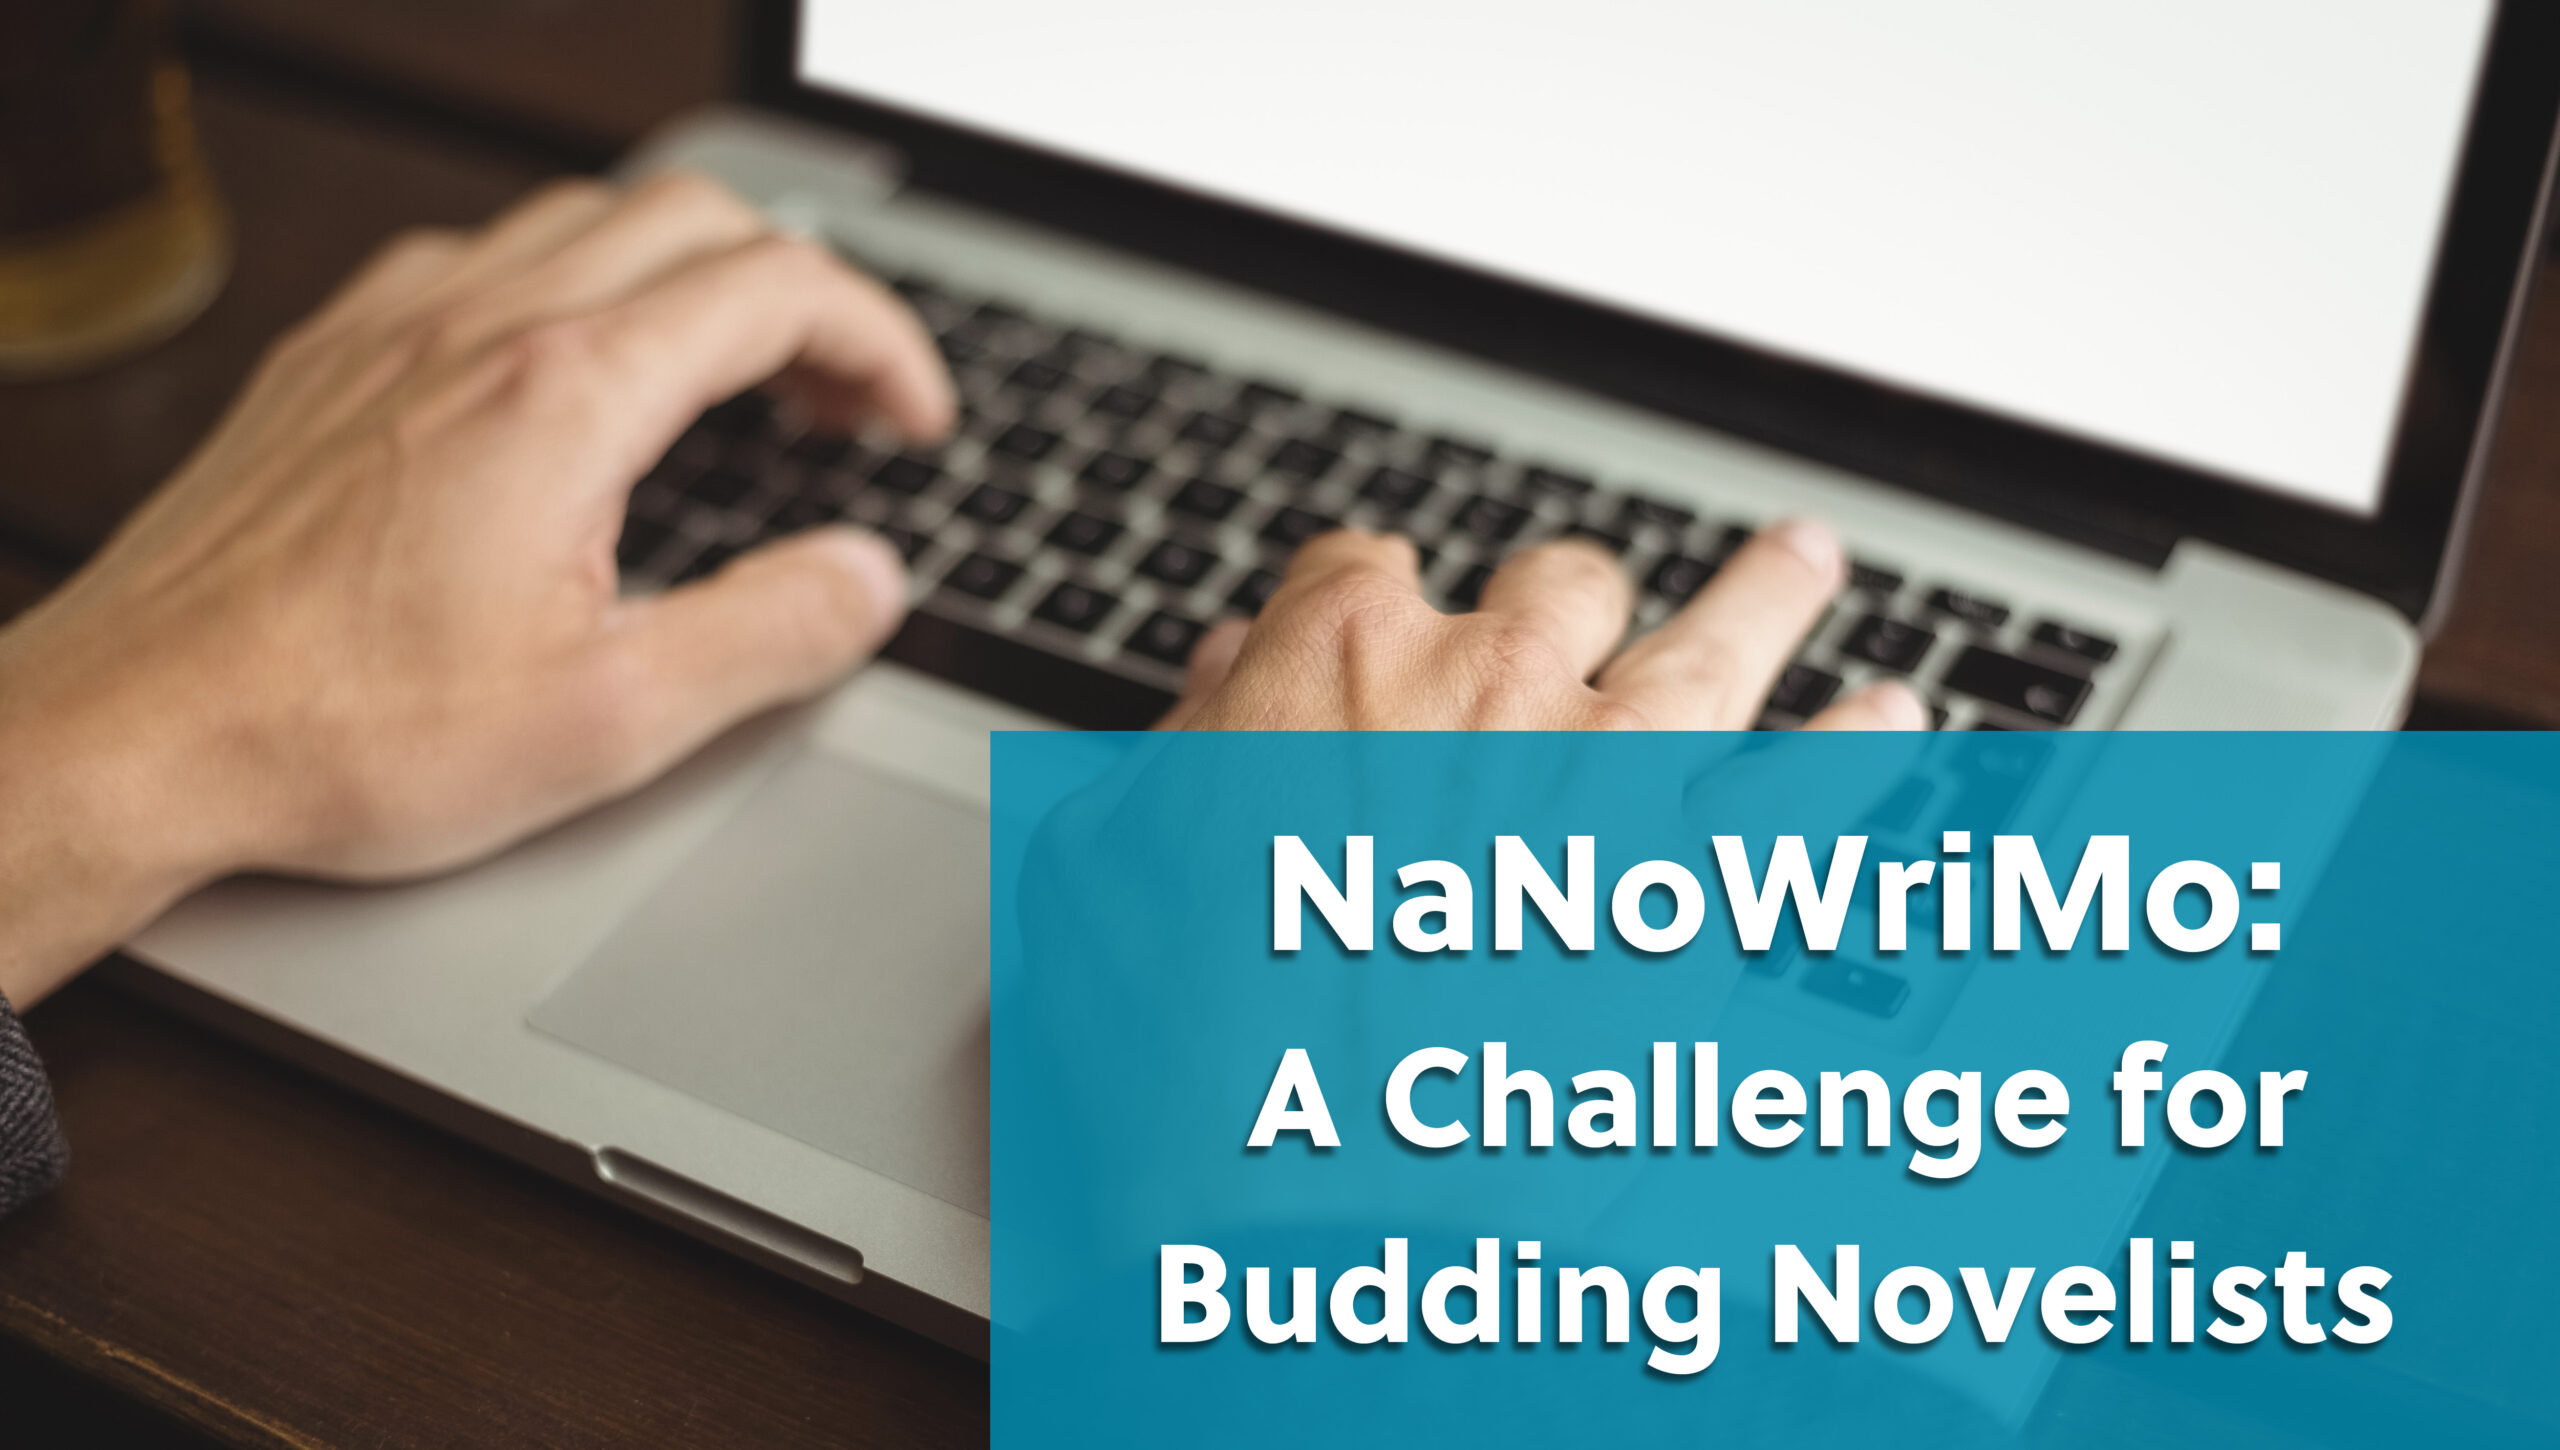 NaNoWriMo: A Challenge for Budding Novelists